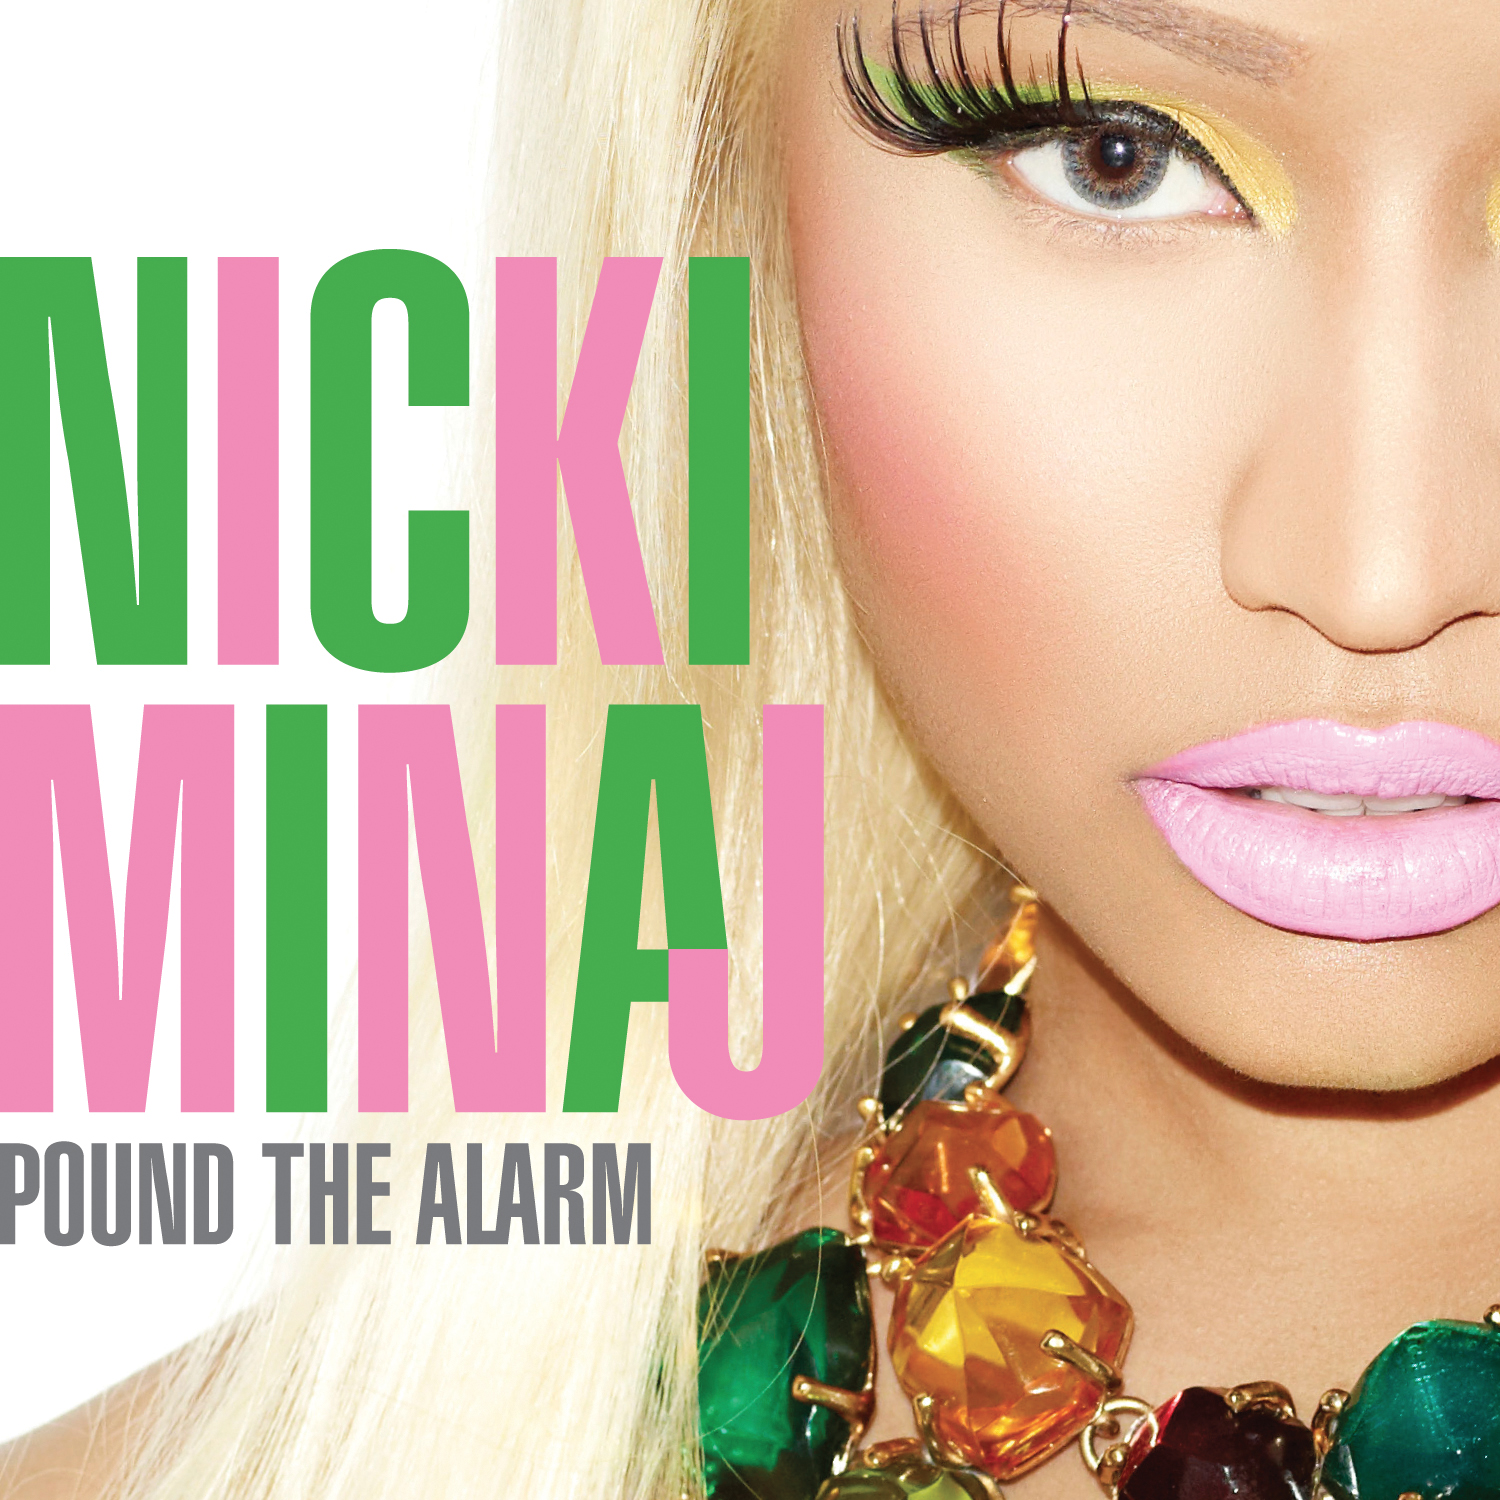 http://3.bp.blogspot.com/-saNGPQ6Kurs/UA_9lCZzgbI/AAAAAAAAJZw/iMqmja6heAI/s1600/Nicki-Minaj-Pound-the-Alarm-2012.png